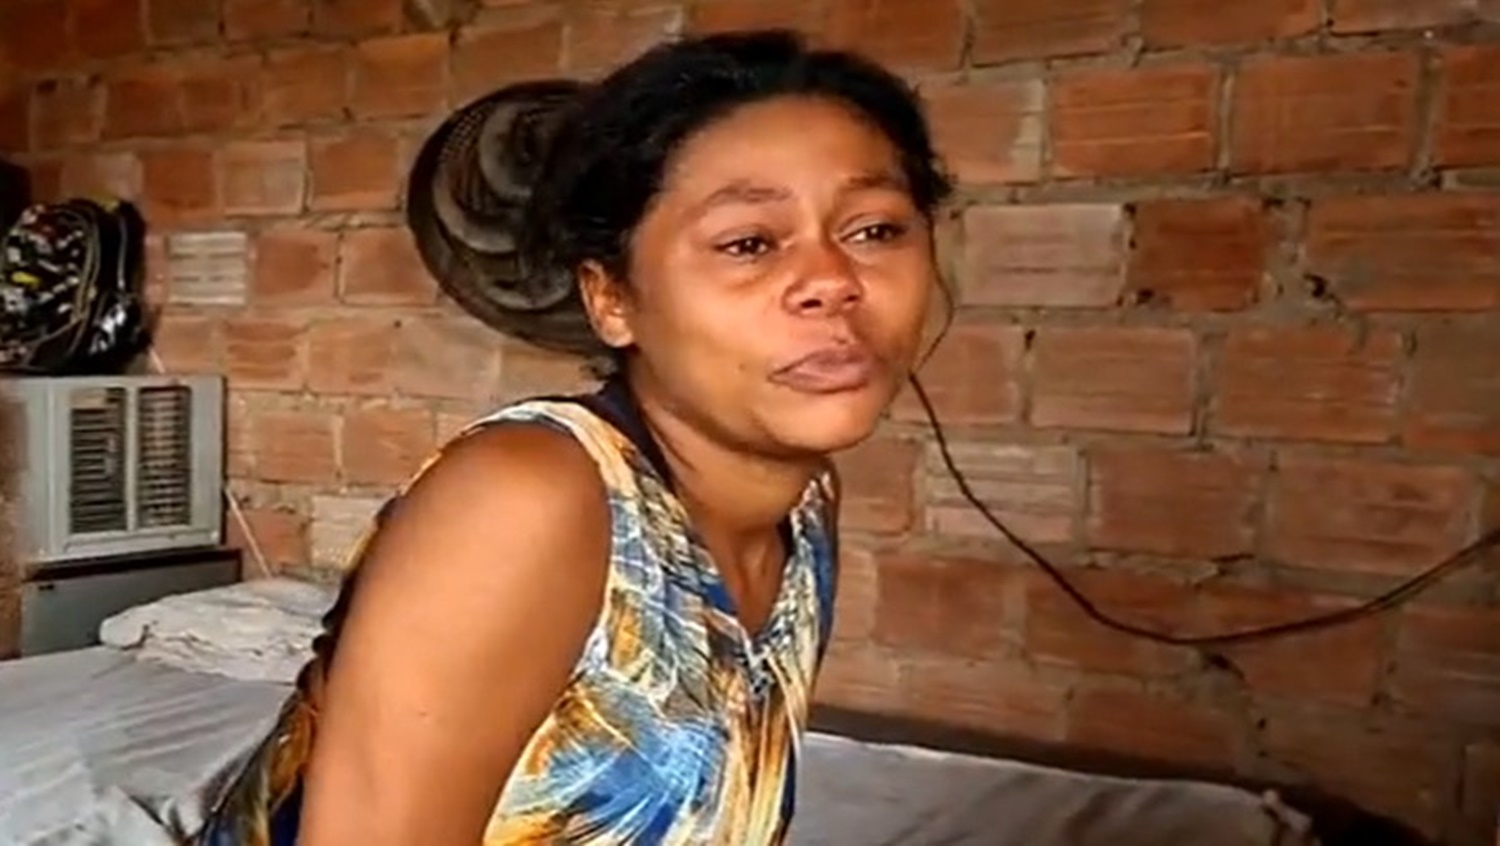 TRISTEZA: Mãe é estuprada, fica grávida e precisa de ajuda 